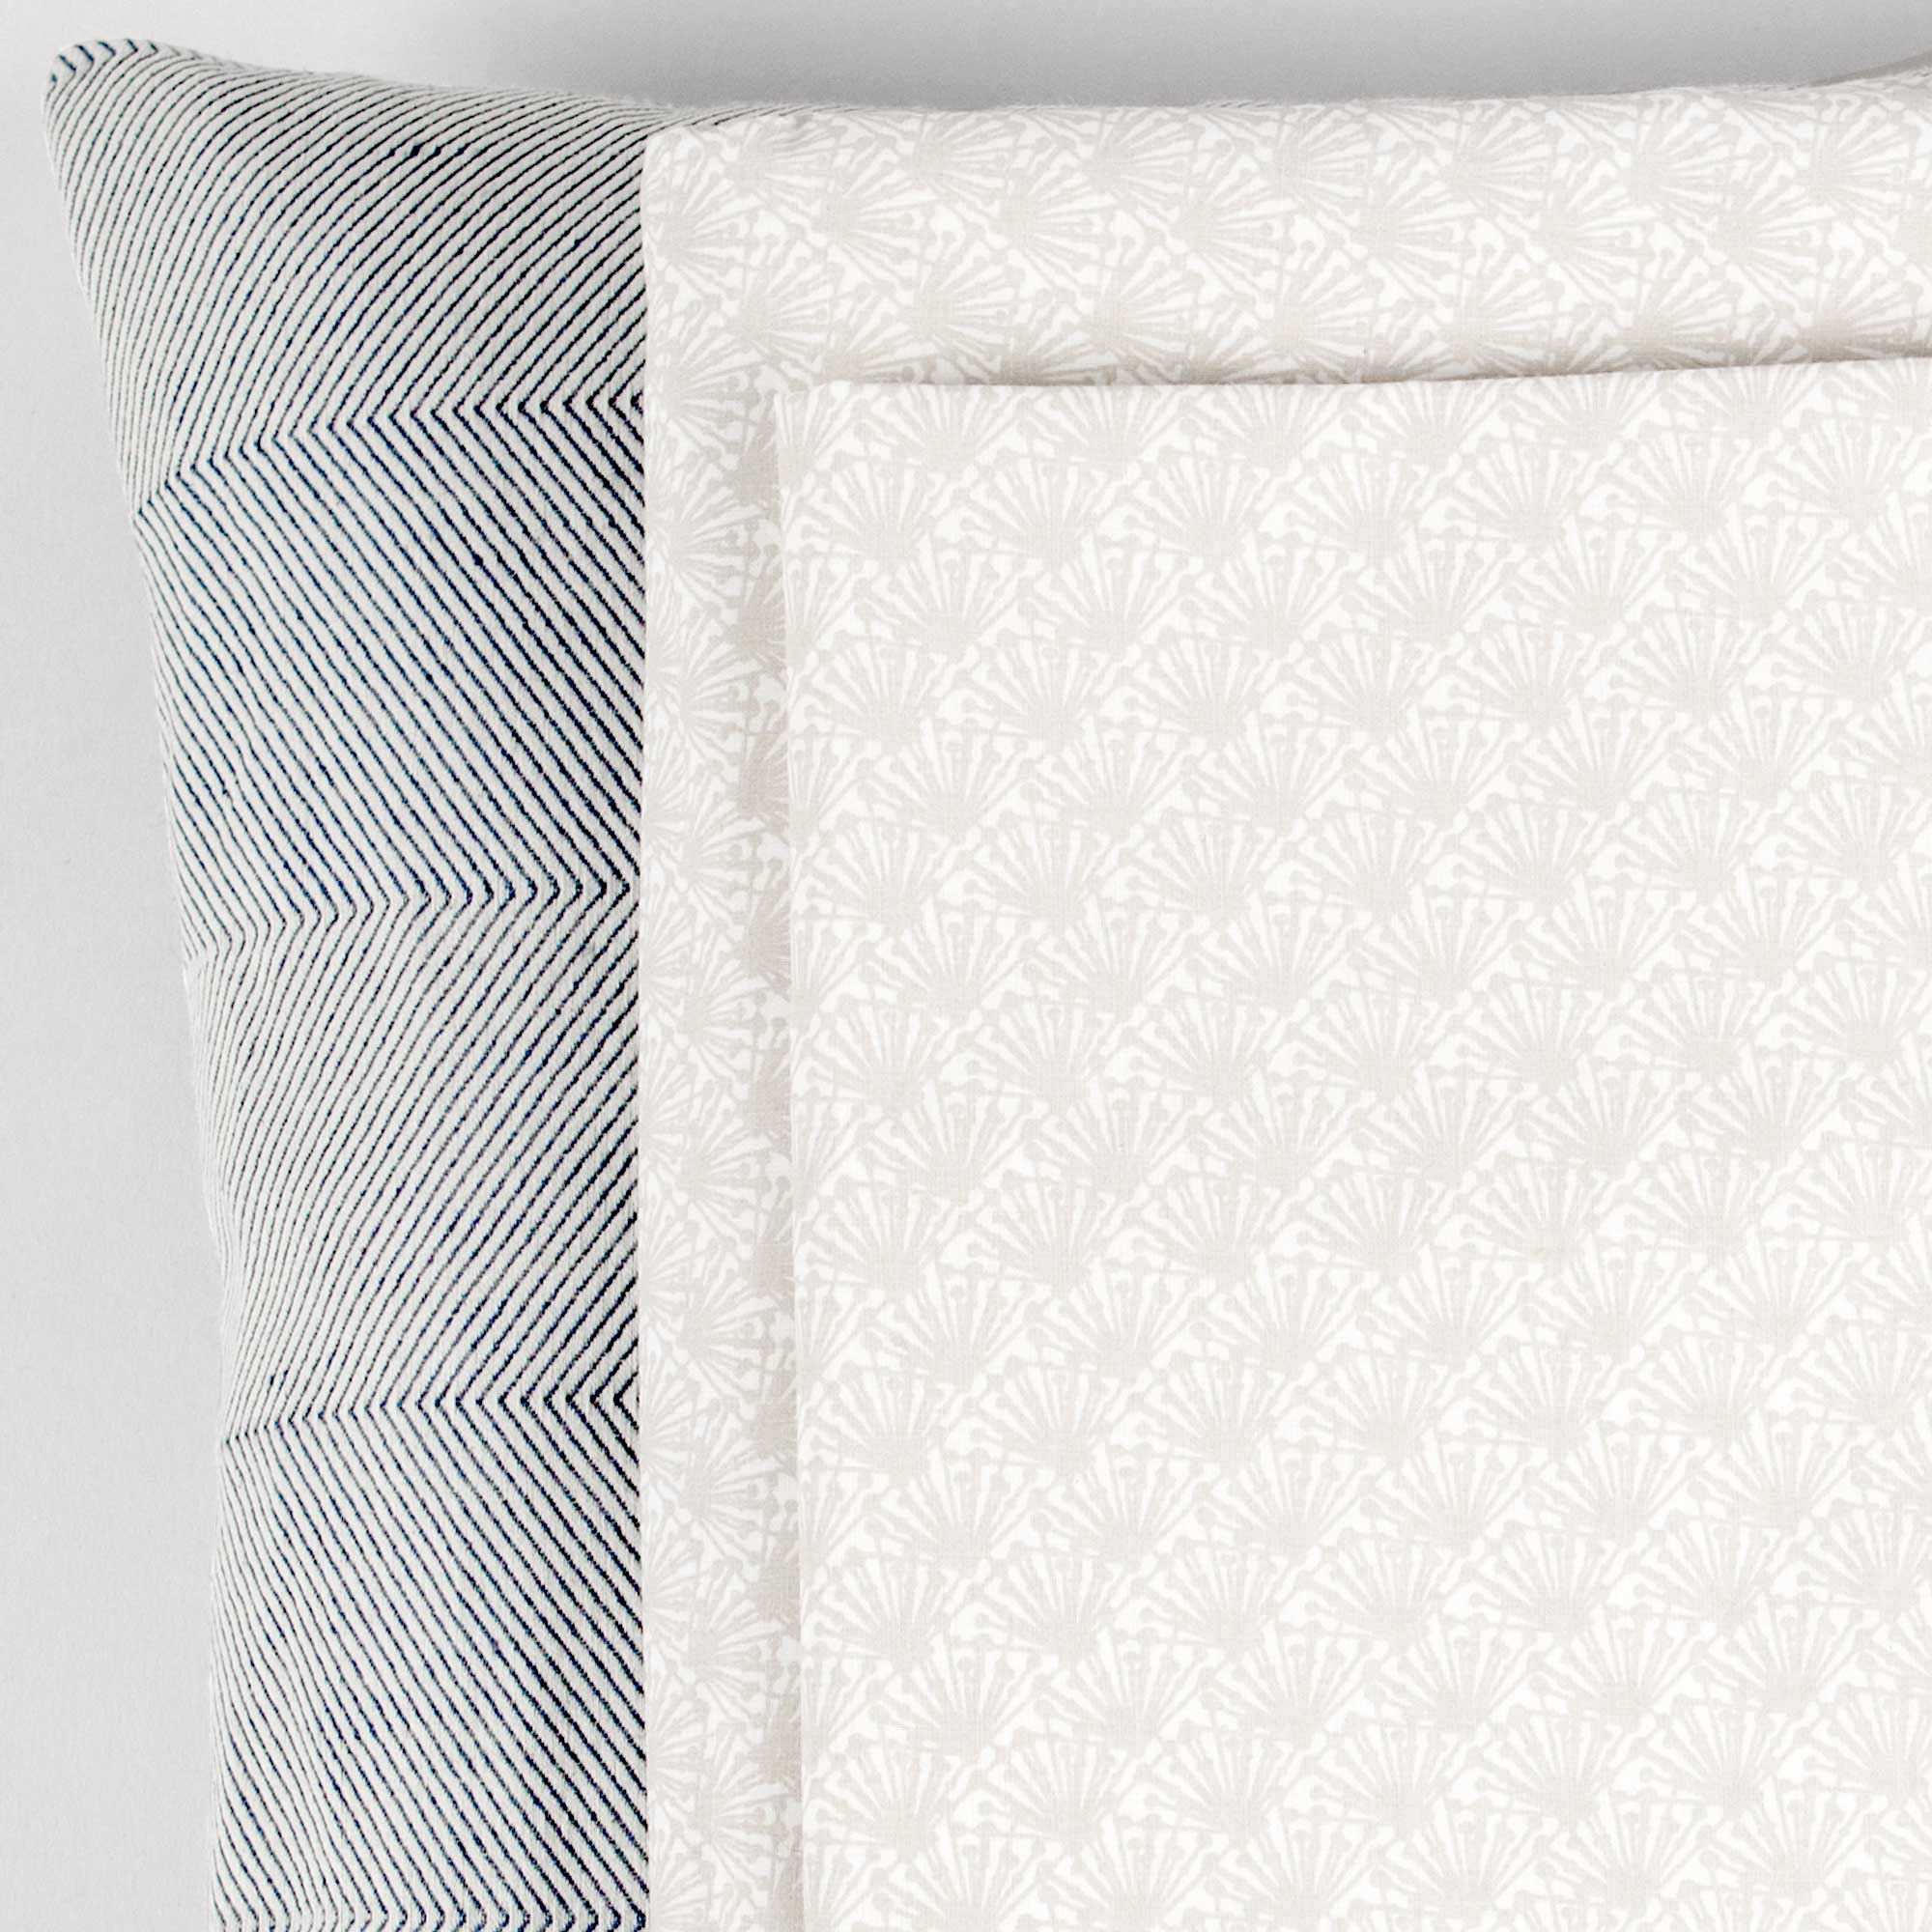 Fili sand organic cotton bed linen, design Anne Rosenberg, RosenbergCph